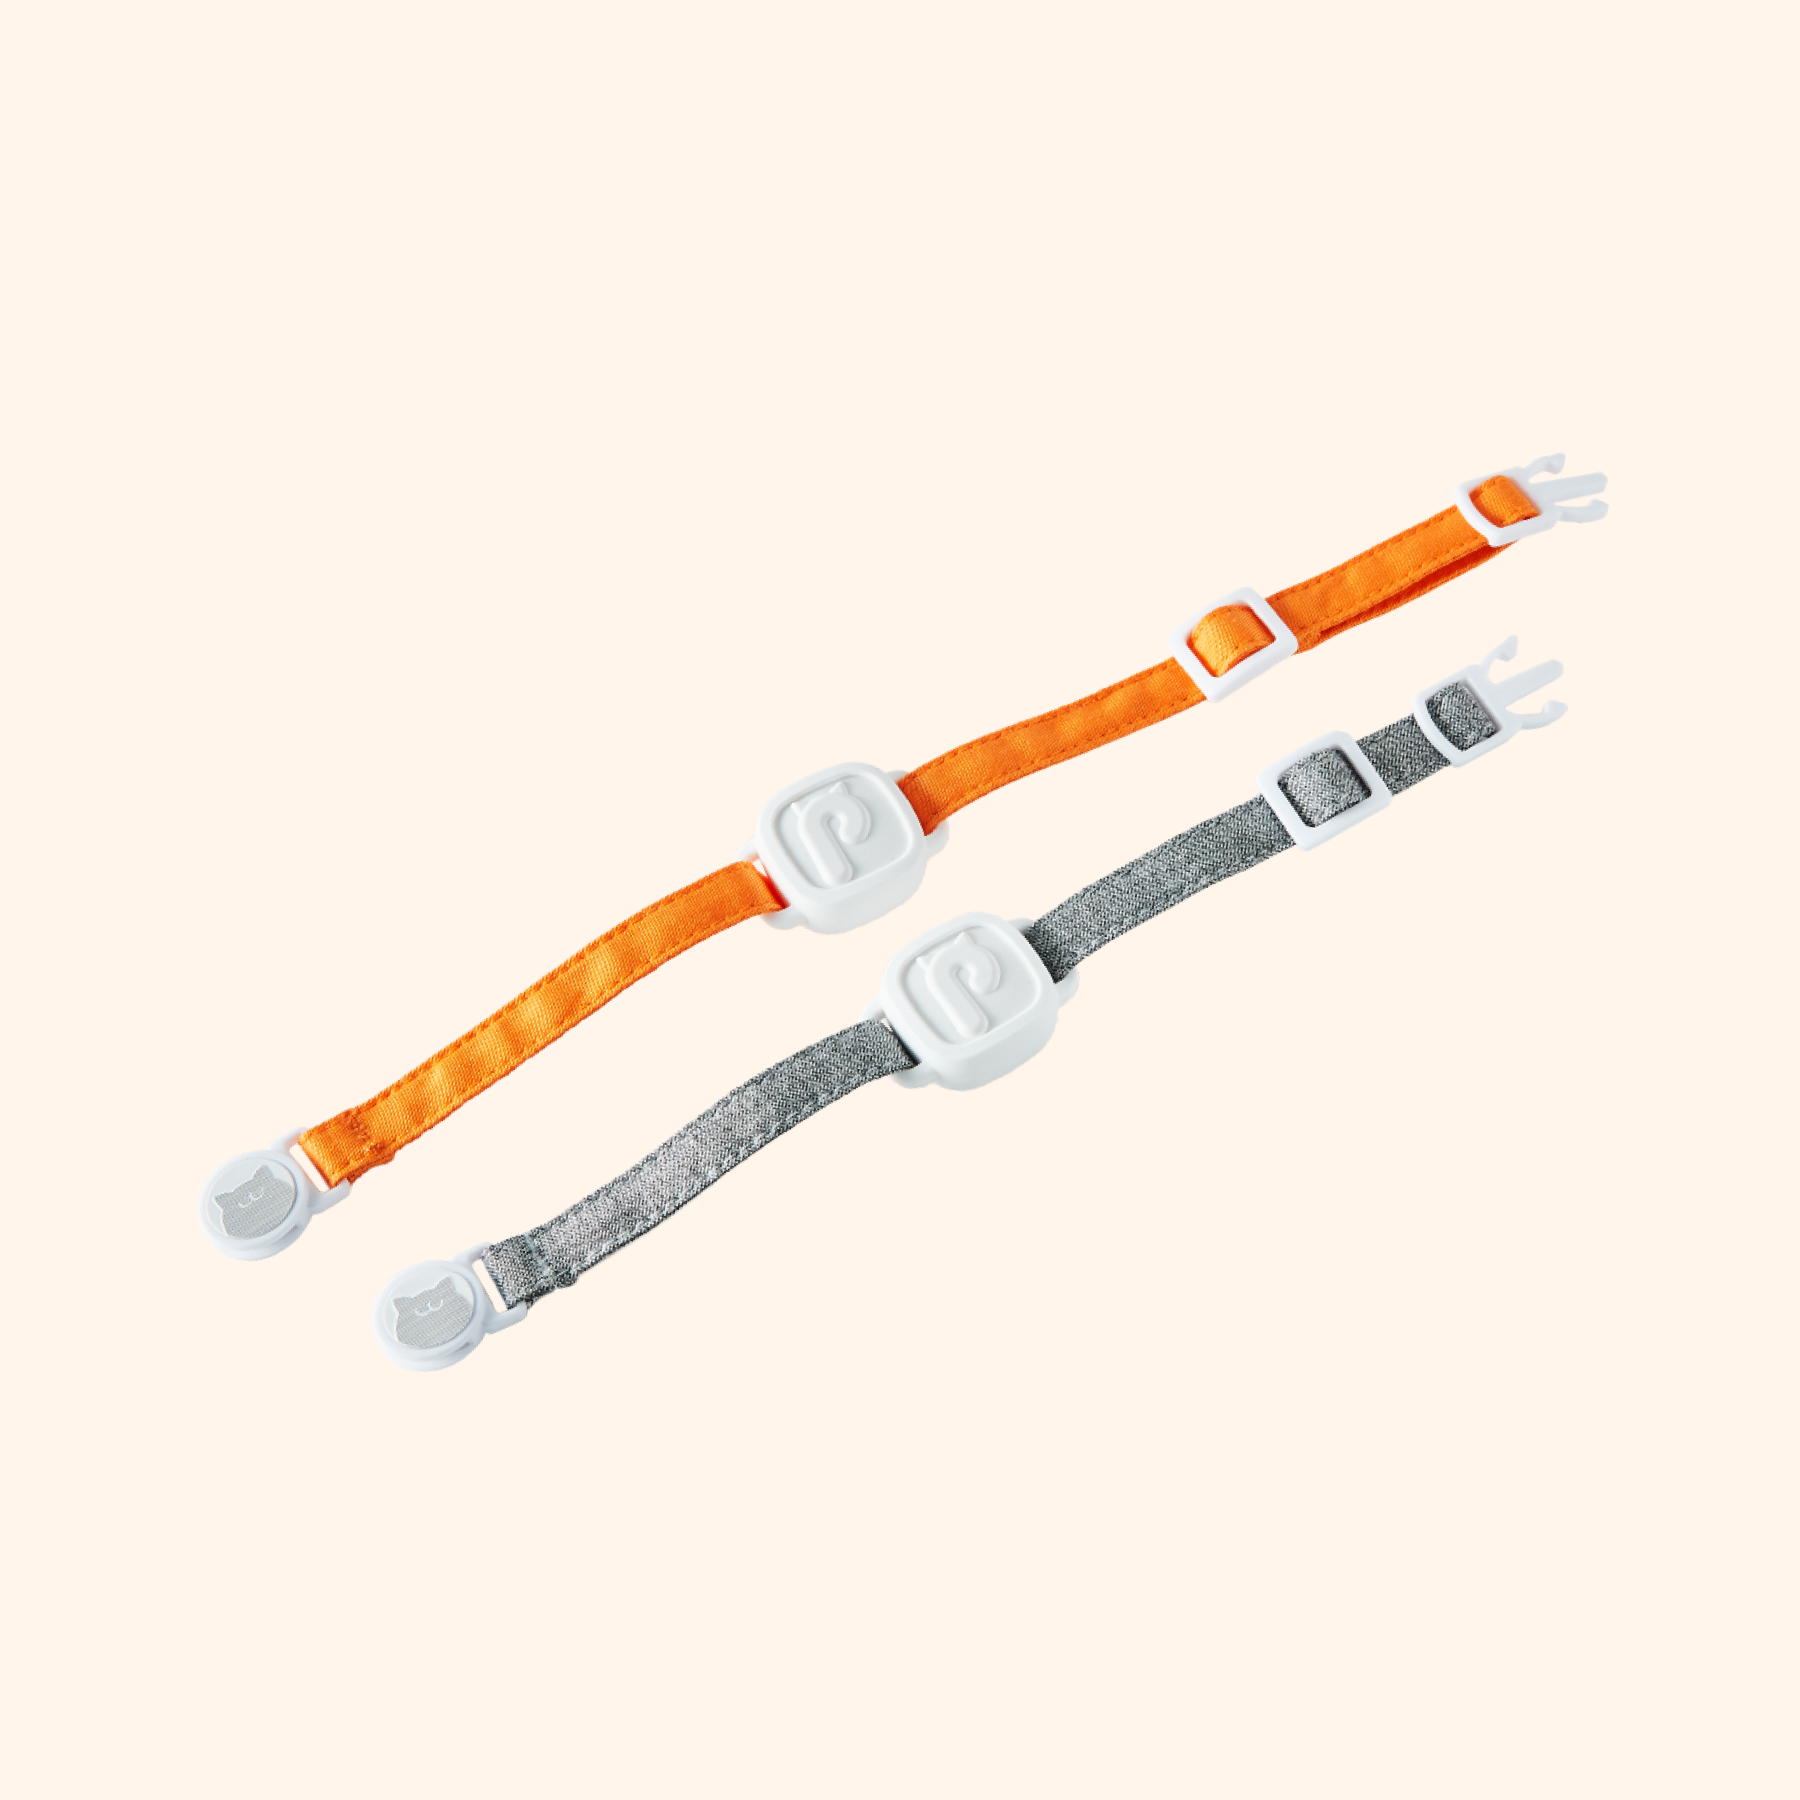 [라비태그 악세사리] 라비태그 스트랩 단품 : 그레이/S-M 사이즈(16-22cm), 오렌지/M-L 사이즈(19-29cm)